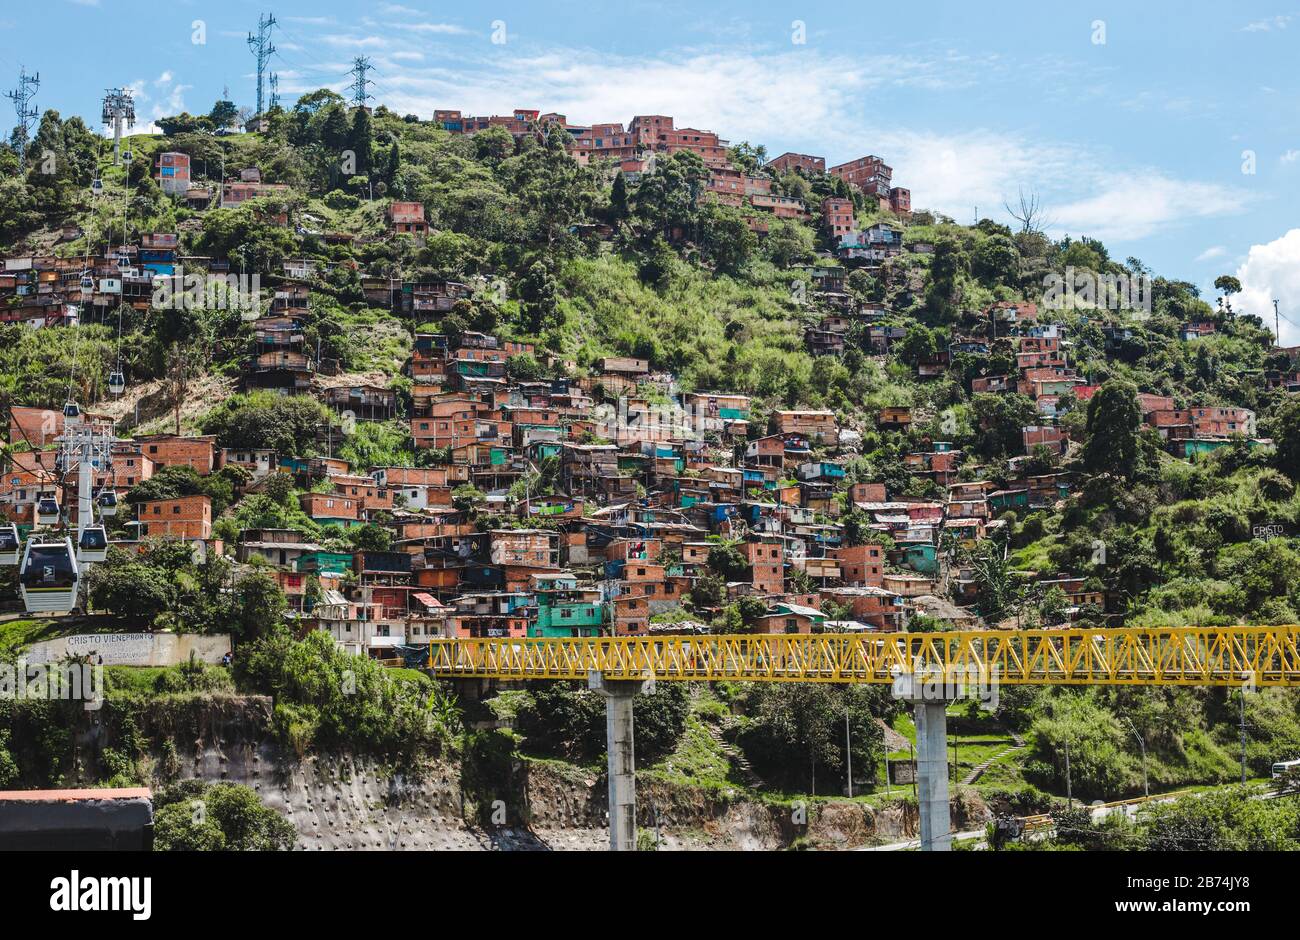 Weitläufige Häuser eines Comuna-Barrio in den wirtschaftlich benachteiligten Außenbereichen von Medellin, Kolumbien Stockfoto